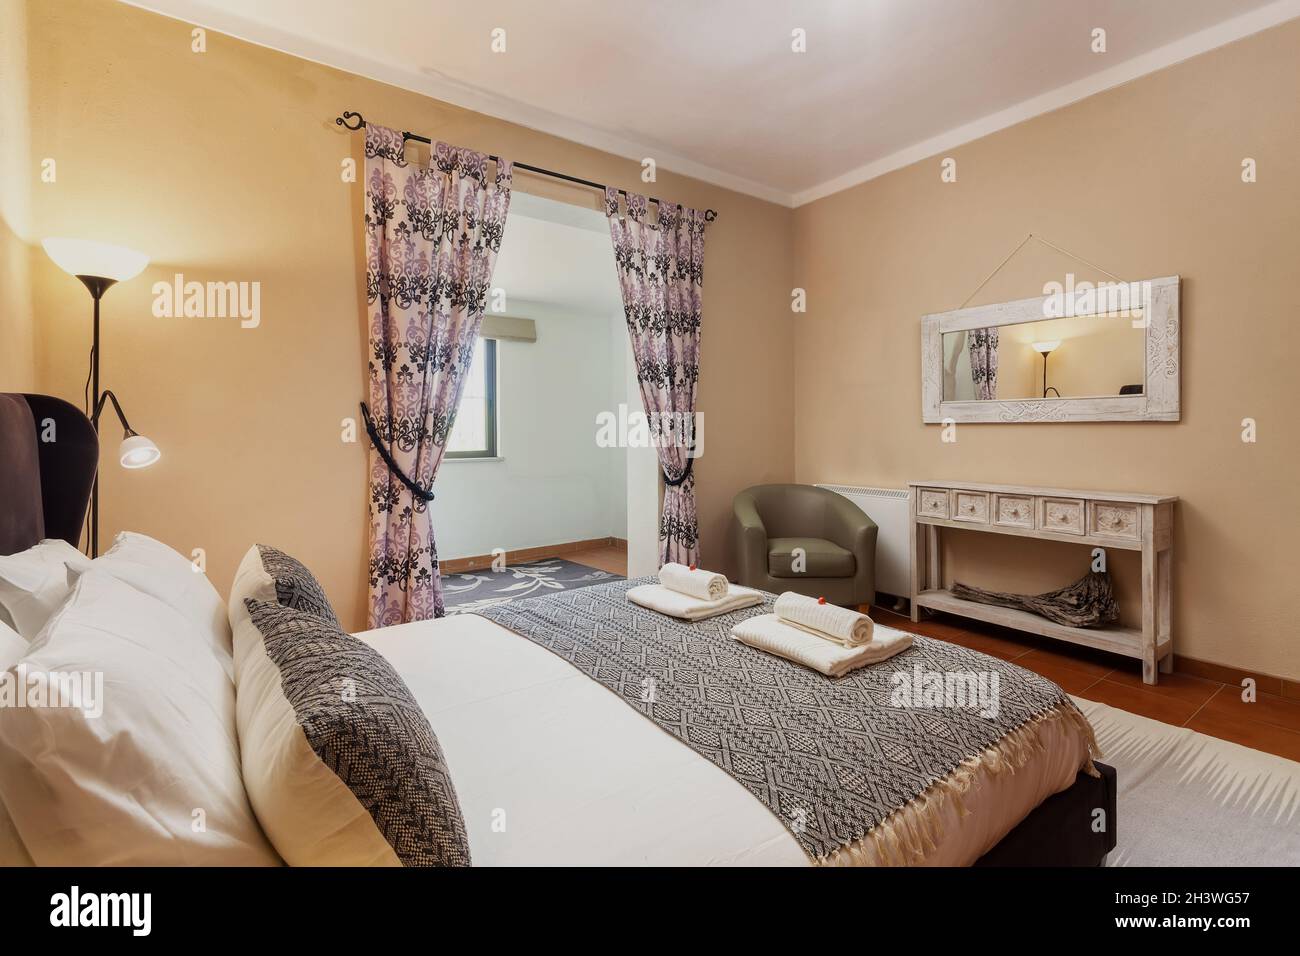 Camera da letto in classico stile mediterraneo tradizionale con letto matrimoniale. Con uno specchio. Foto Stock